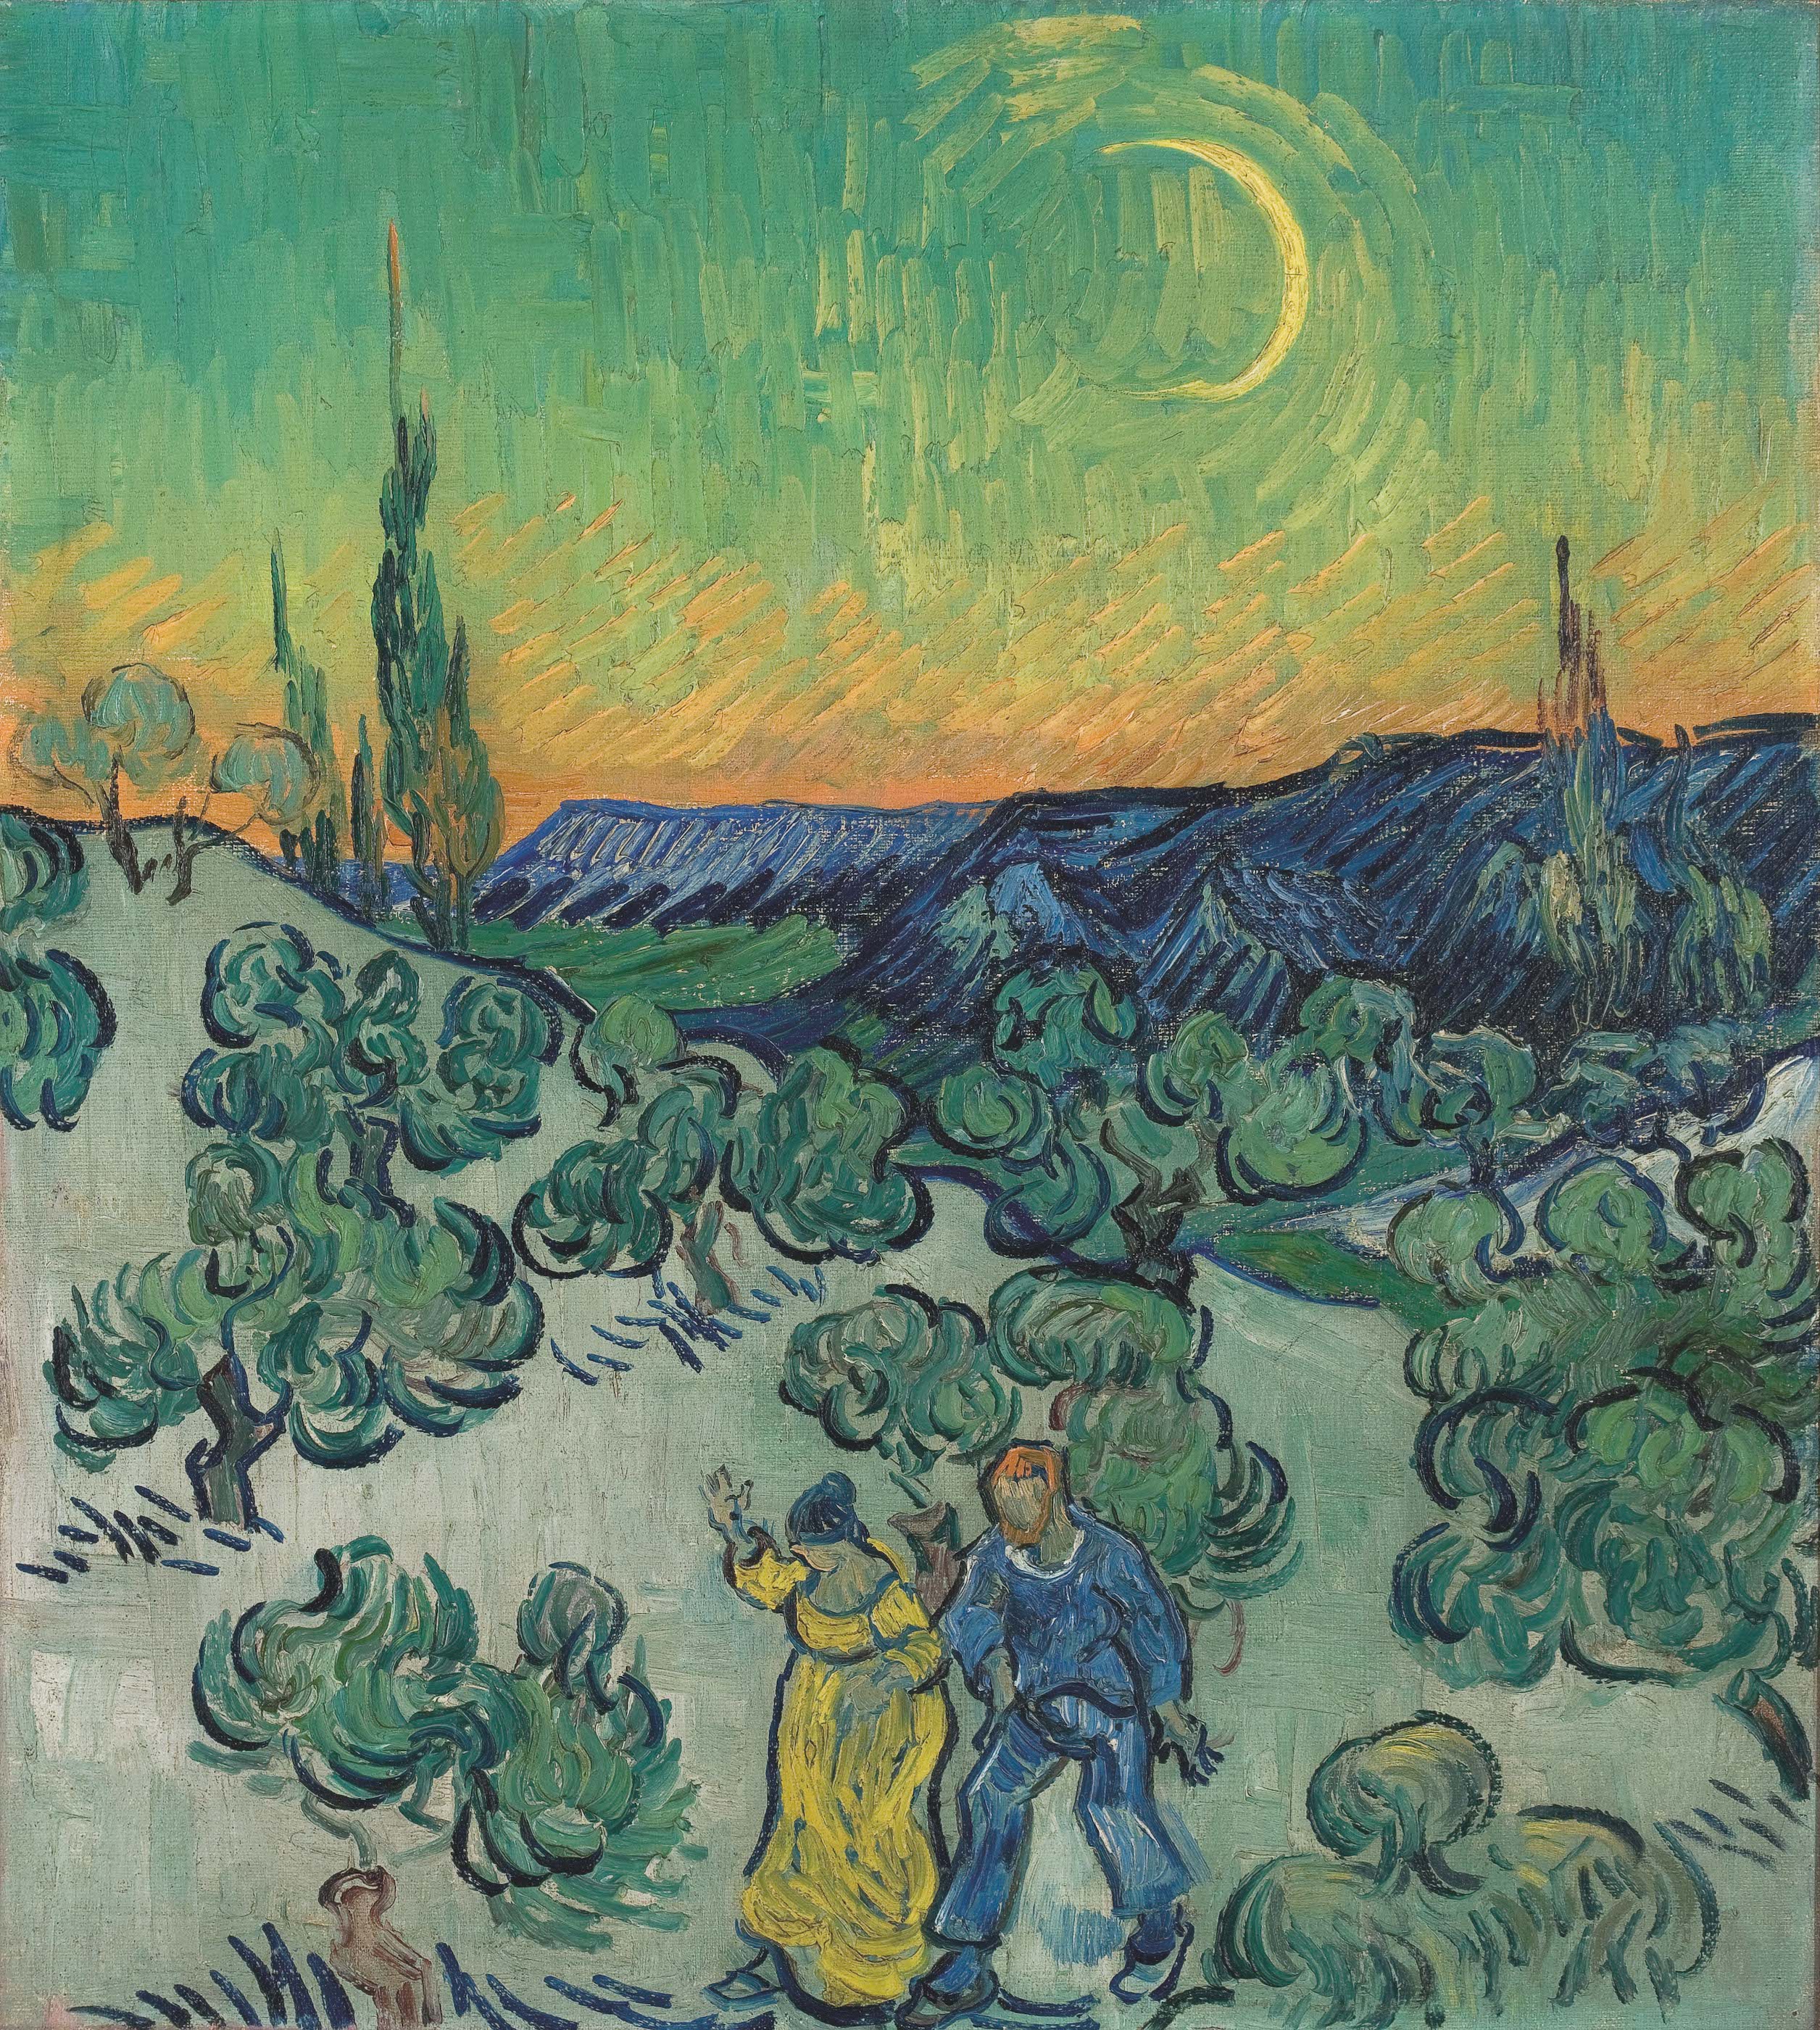 Alacakaranlıkta Yürüyüş by Vincent van Gogh - 1889-1890 - 52 x 47 cm 